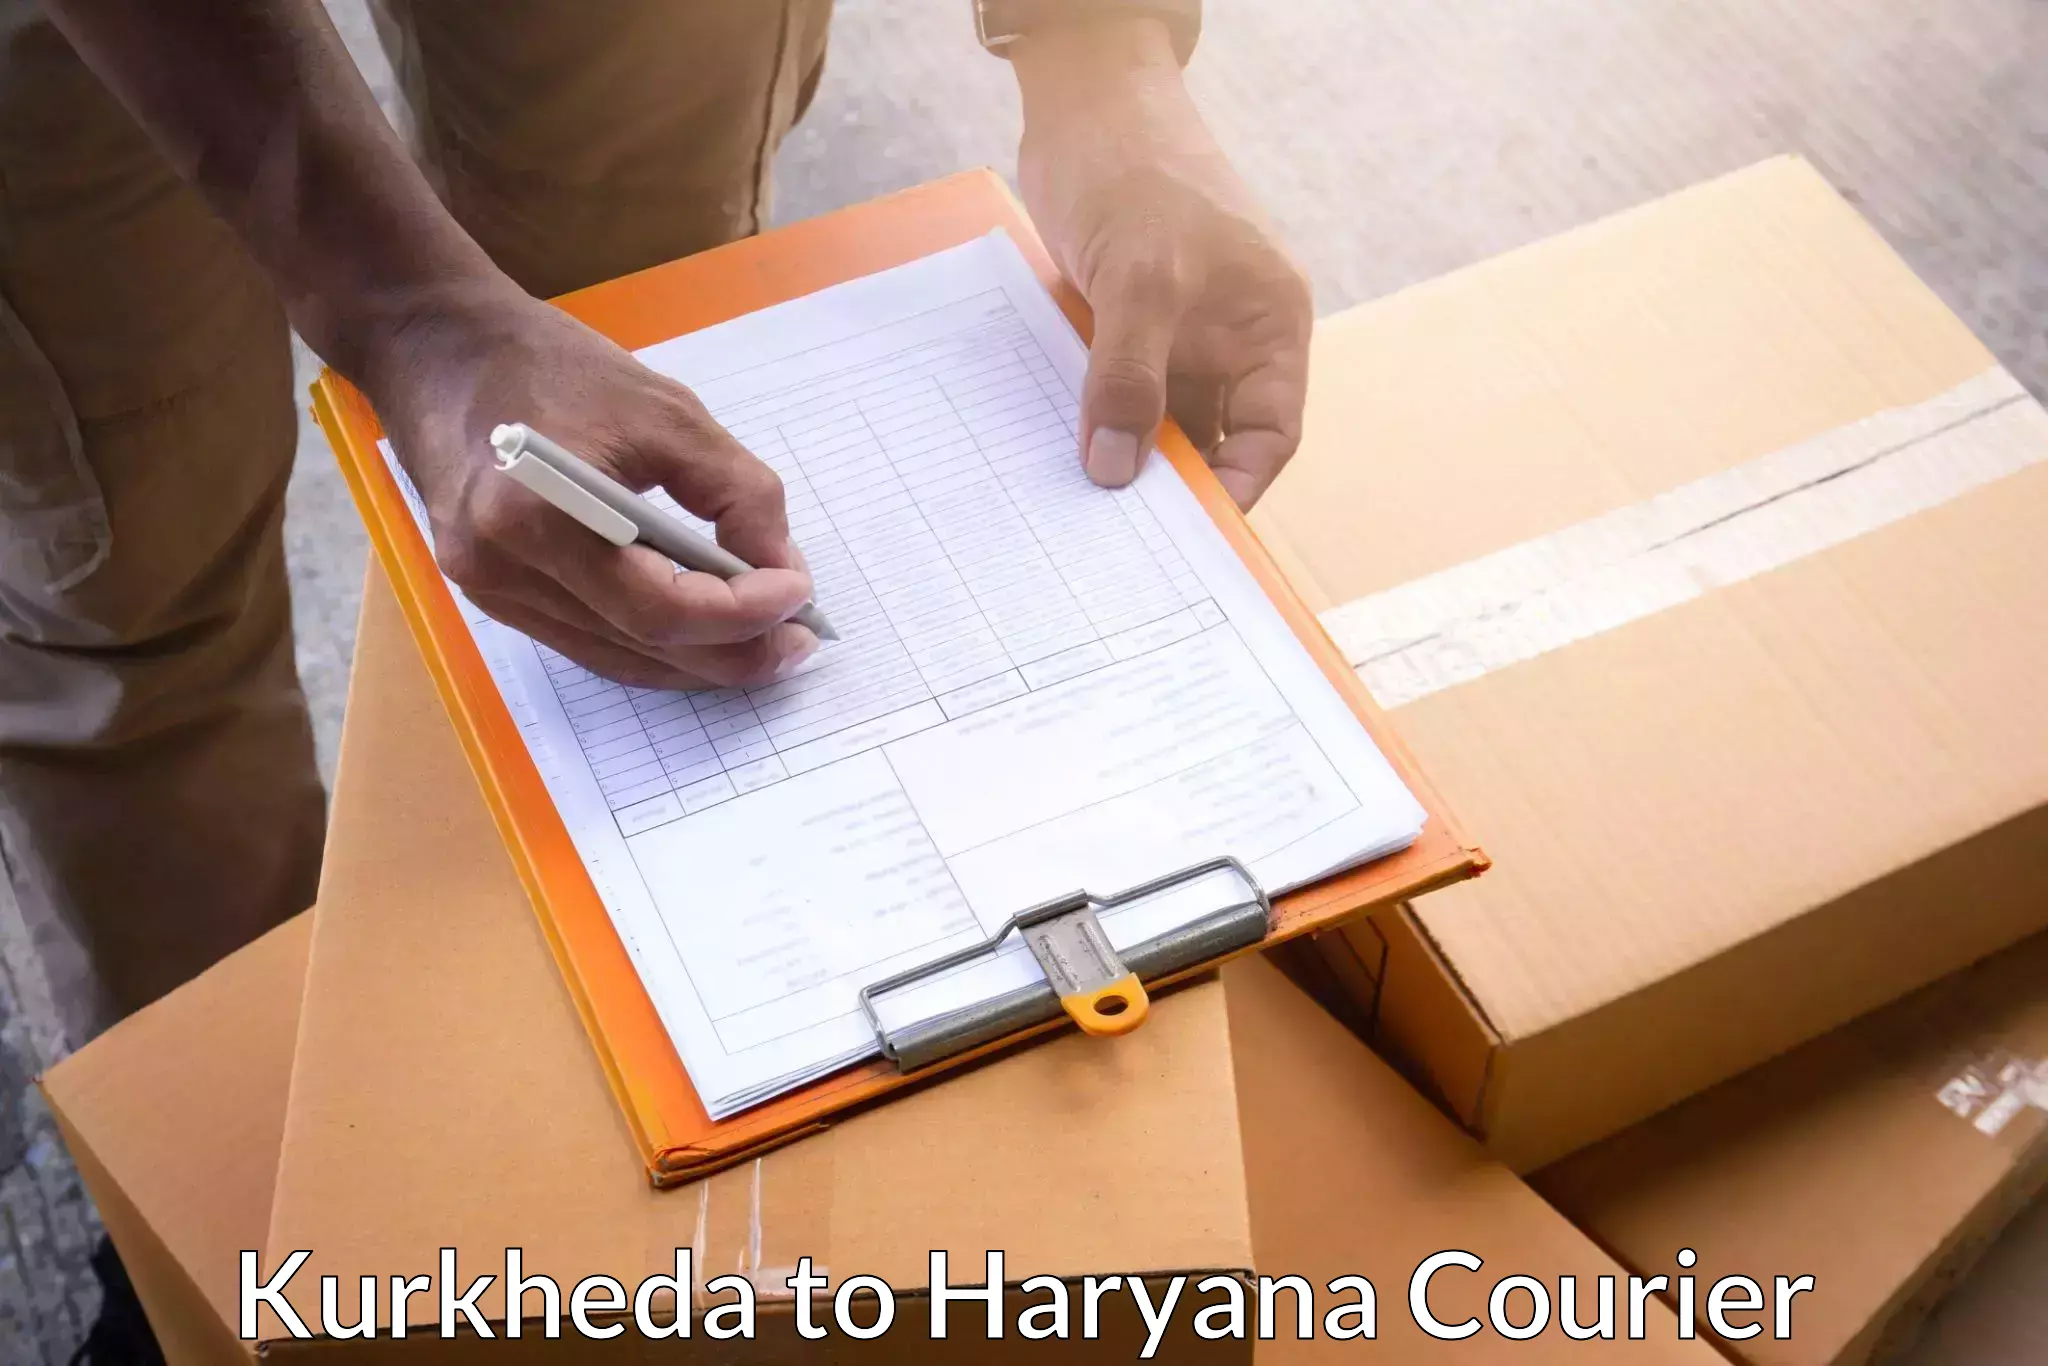 Express logistics service Kurkheda to Haryana